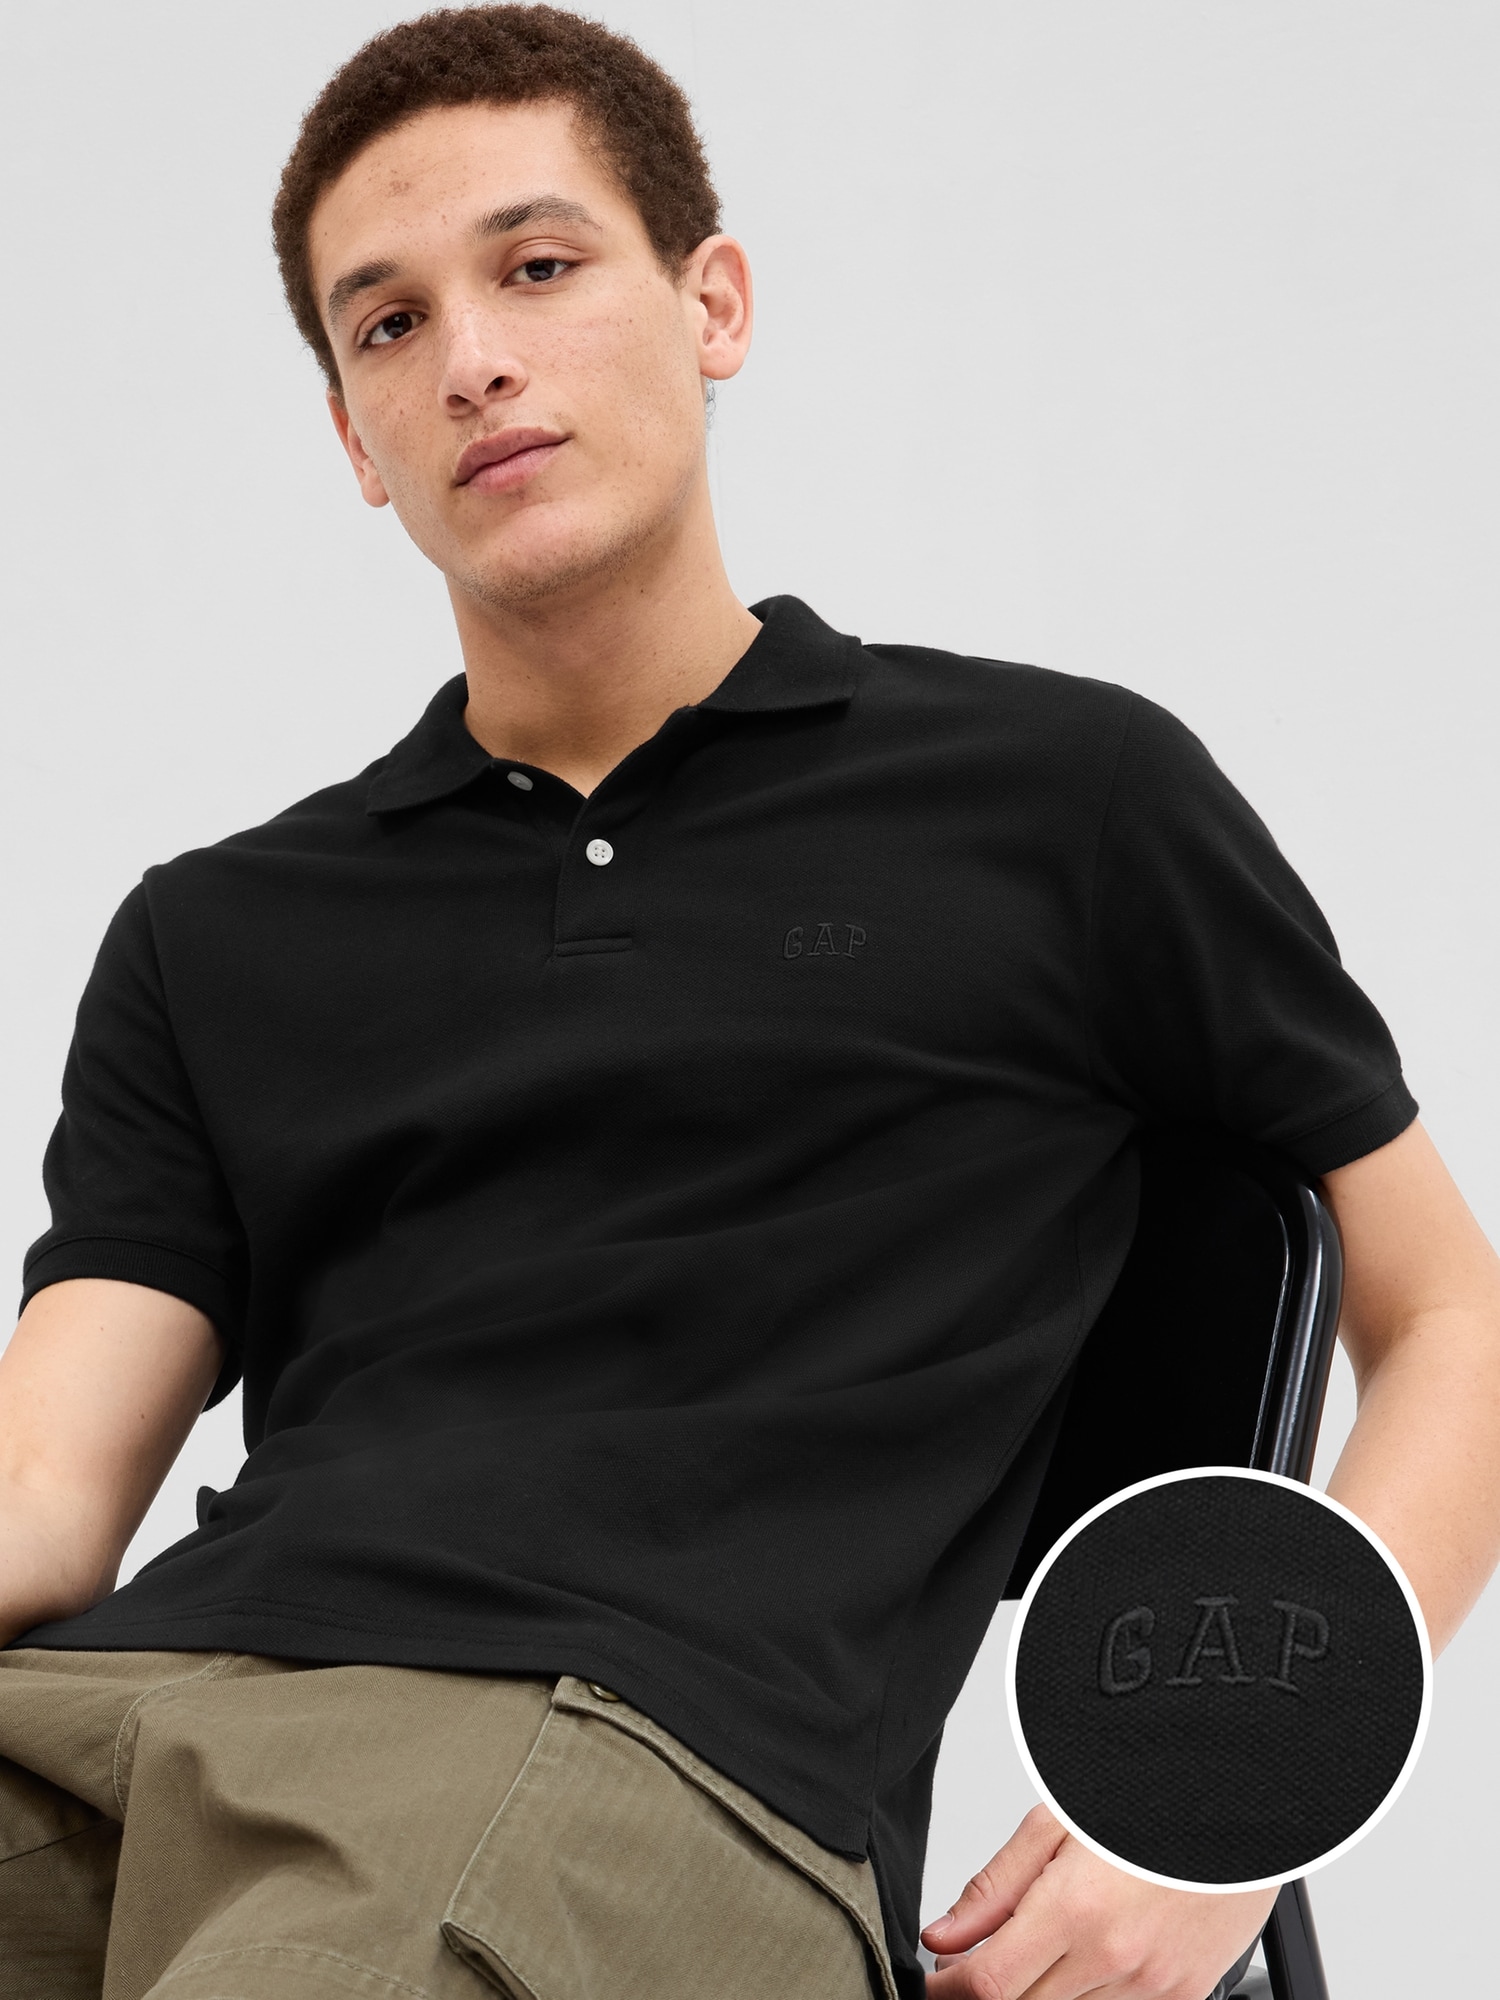 Gap公式オンラインストア GAPロゴ ポロシャツ(ユニセックス)